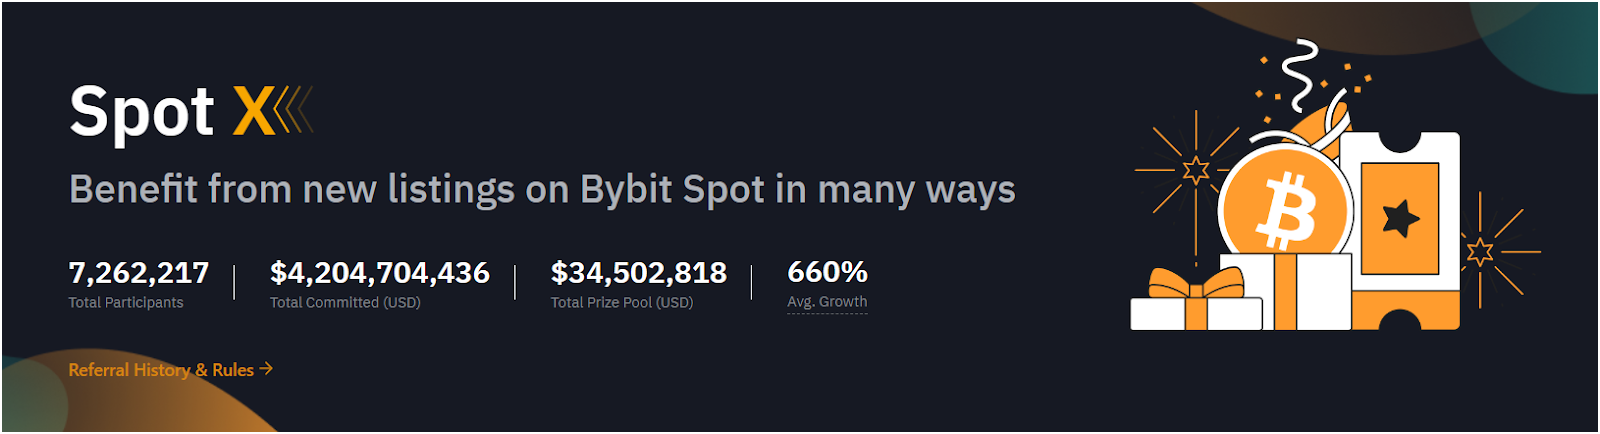 Bybit Spot X Review